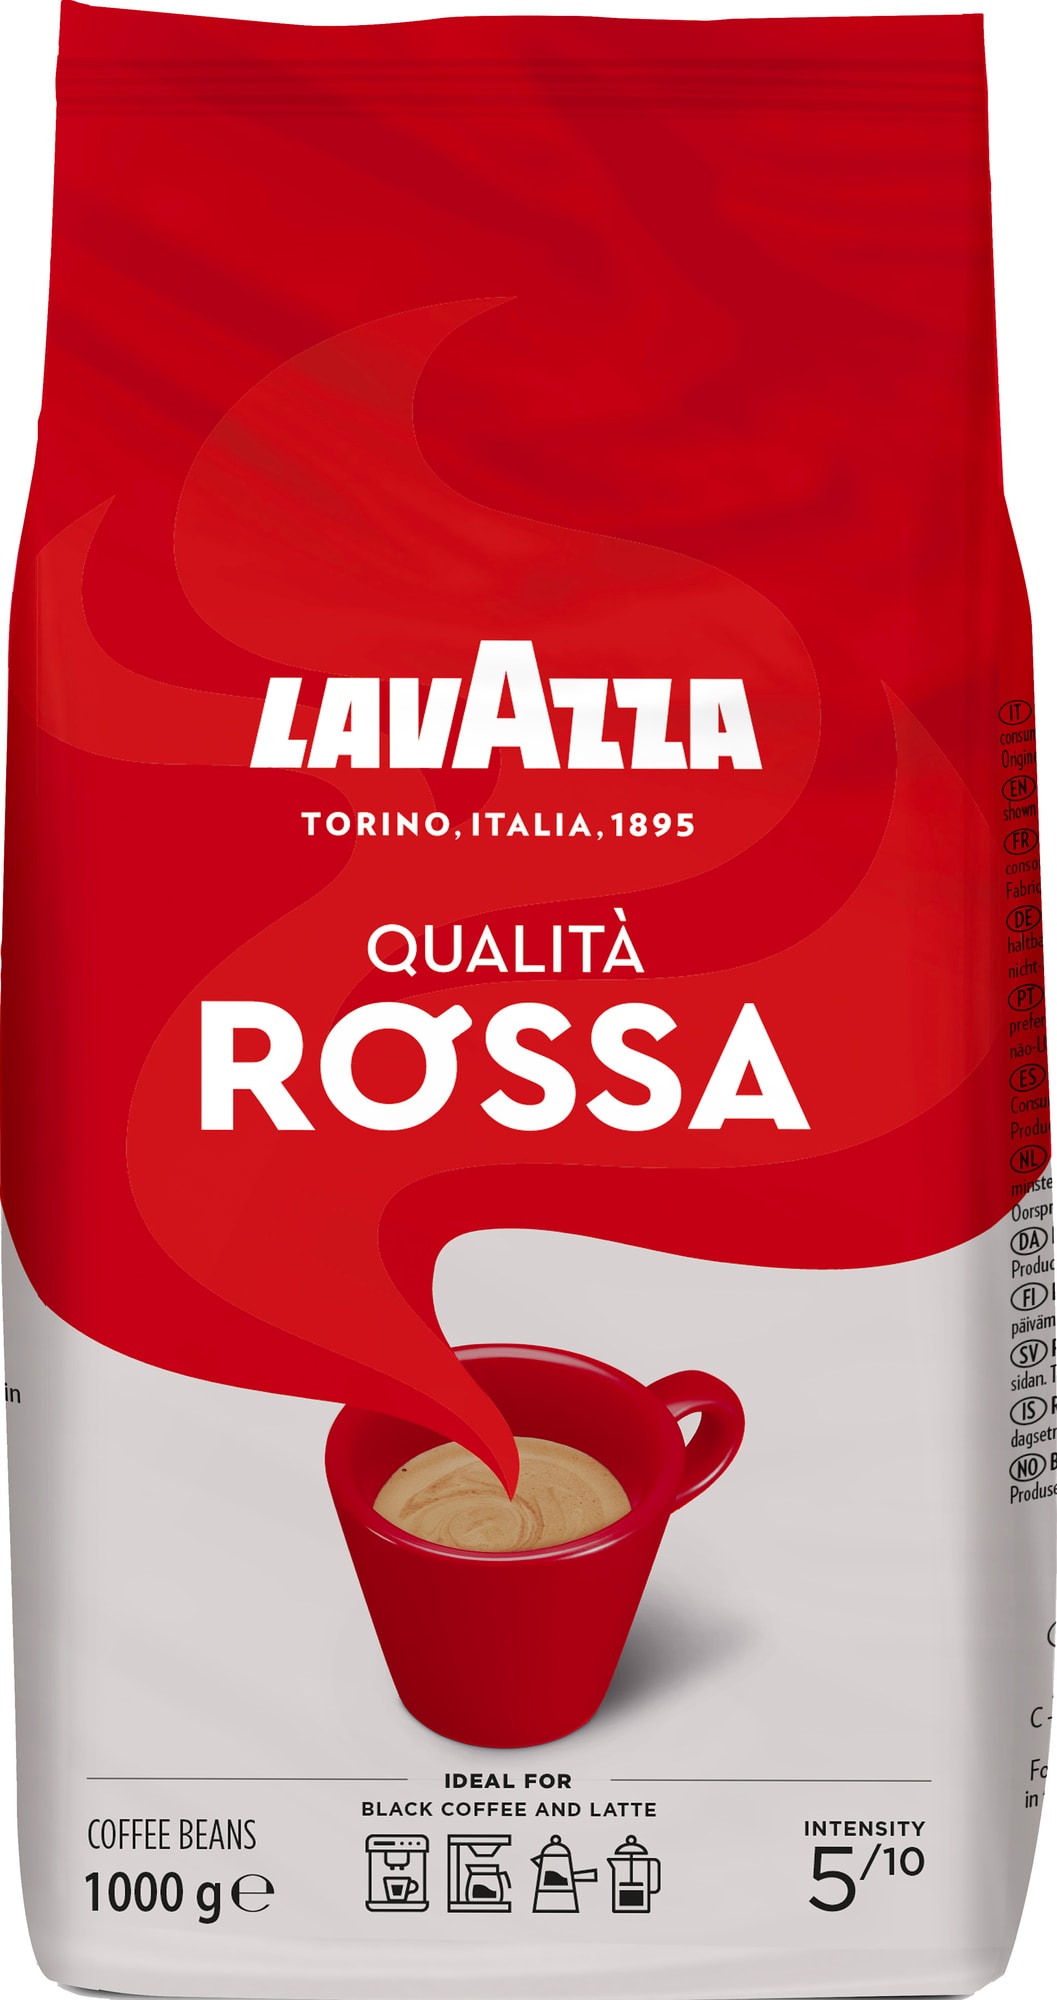 Billede af Lavazza Qualita Rossa kaffebønner